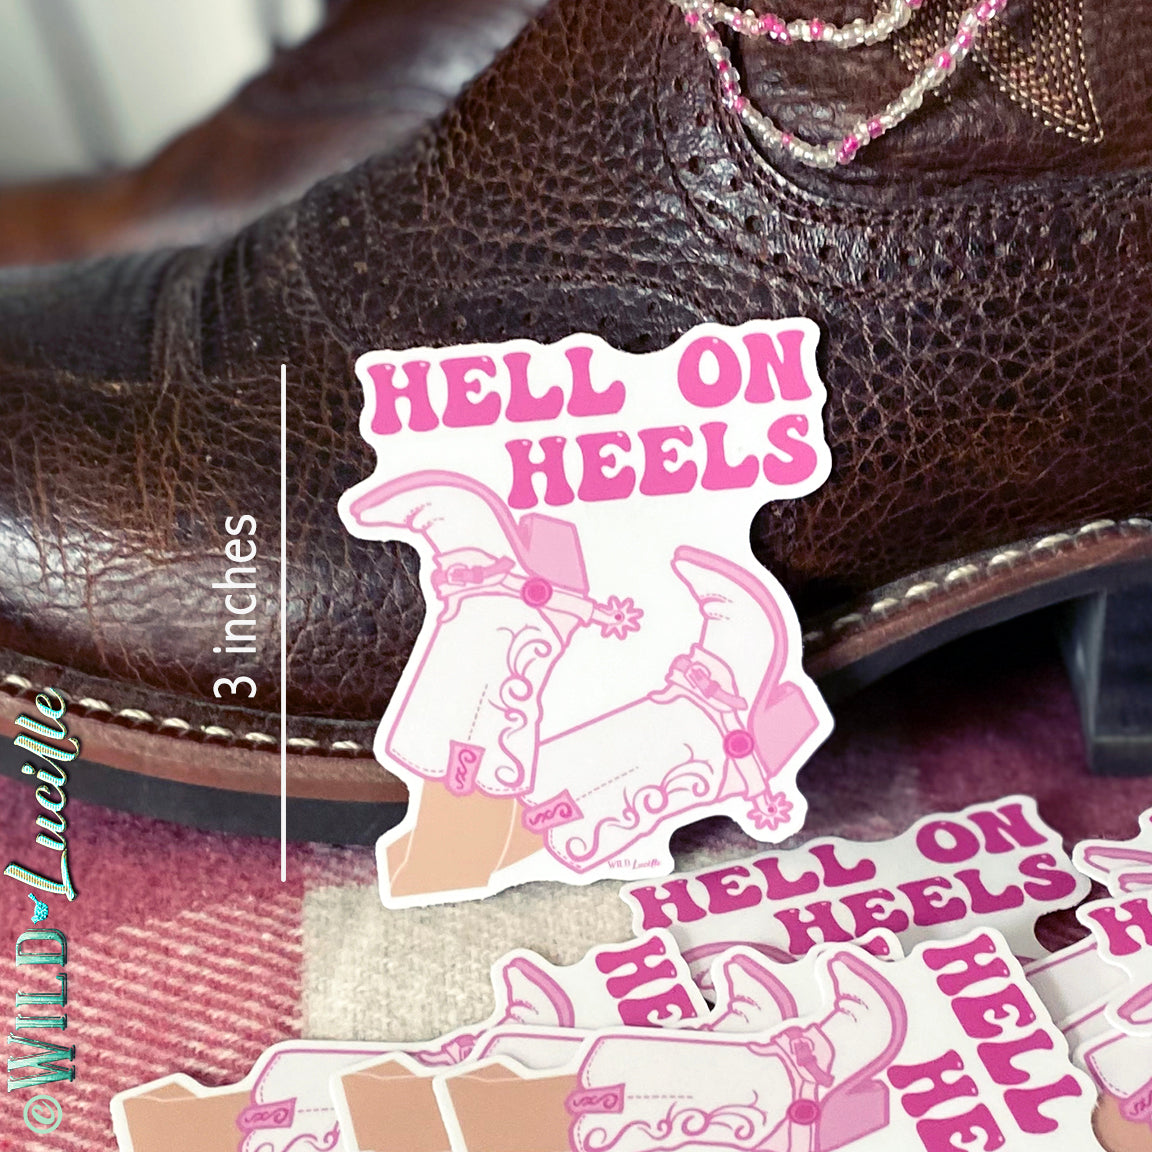 Hell On Heels Pink Boots - Western Vinyl Sticker Decals